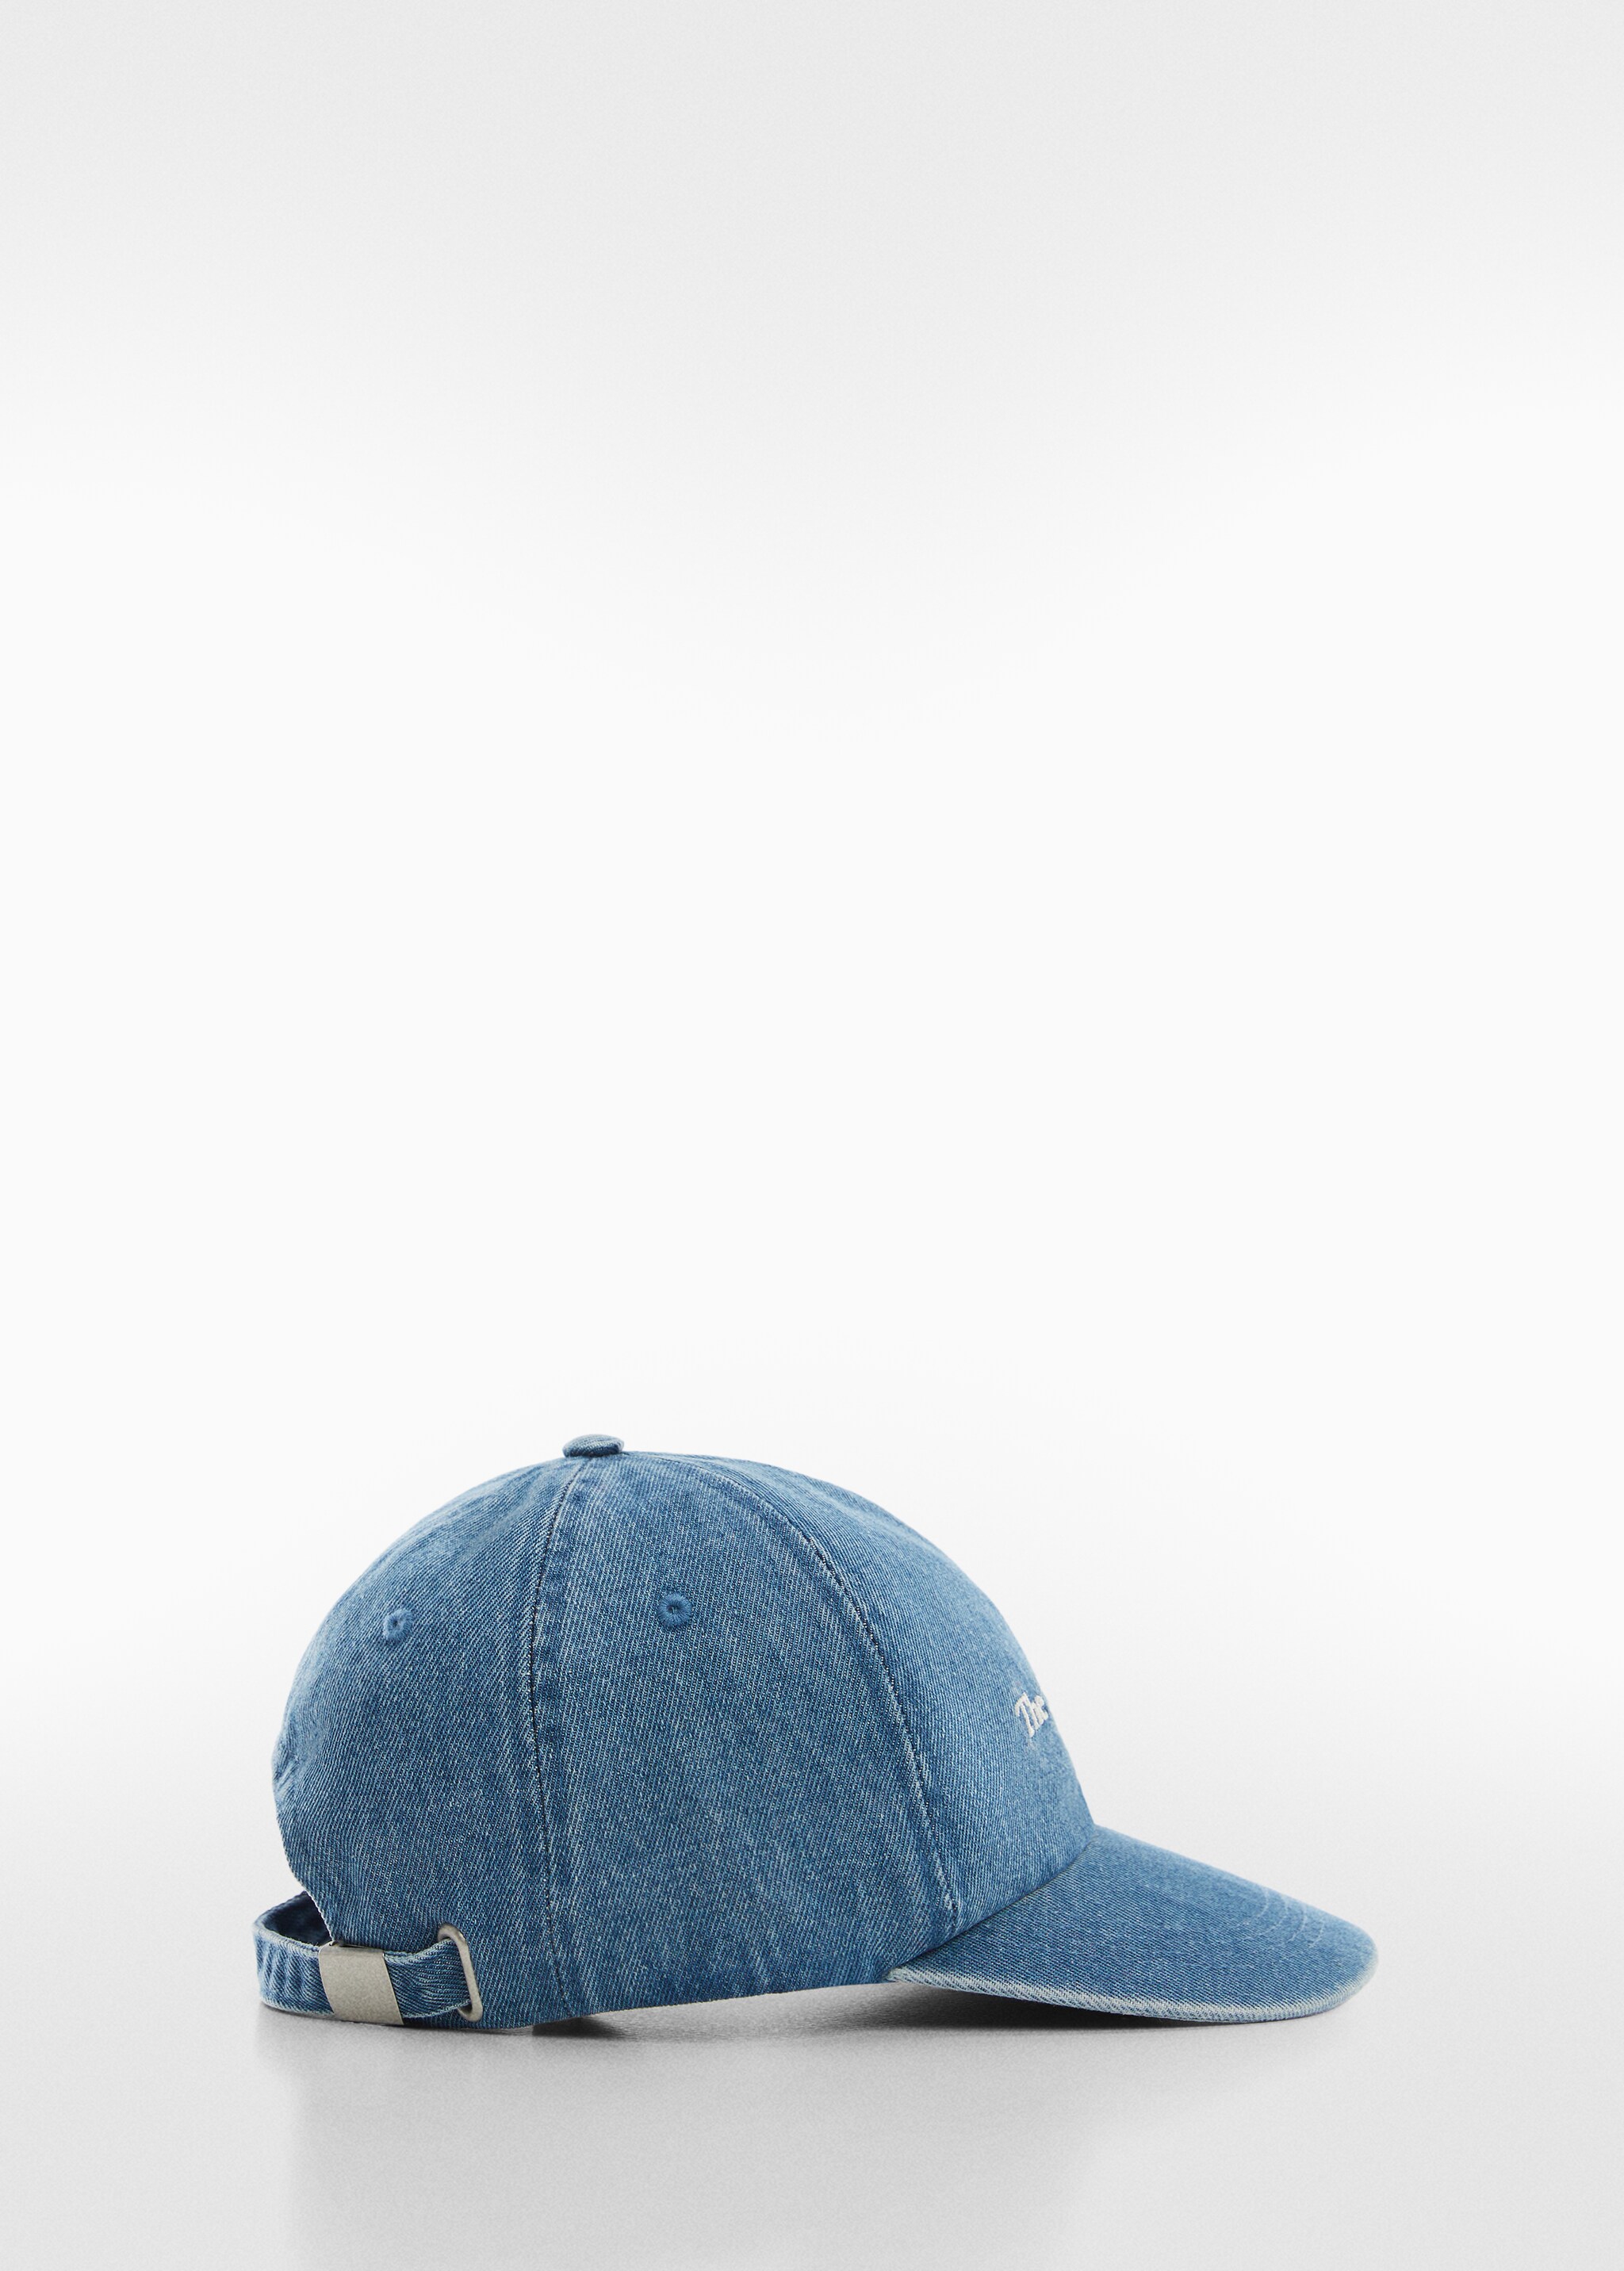 Yazılı kot şapka - Modelsiz ürün